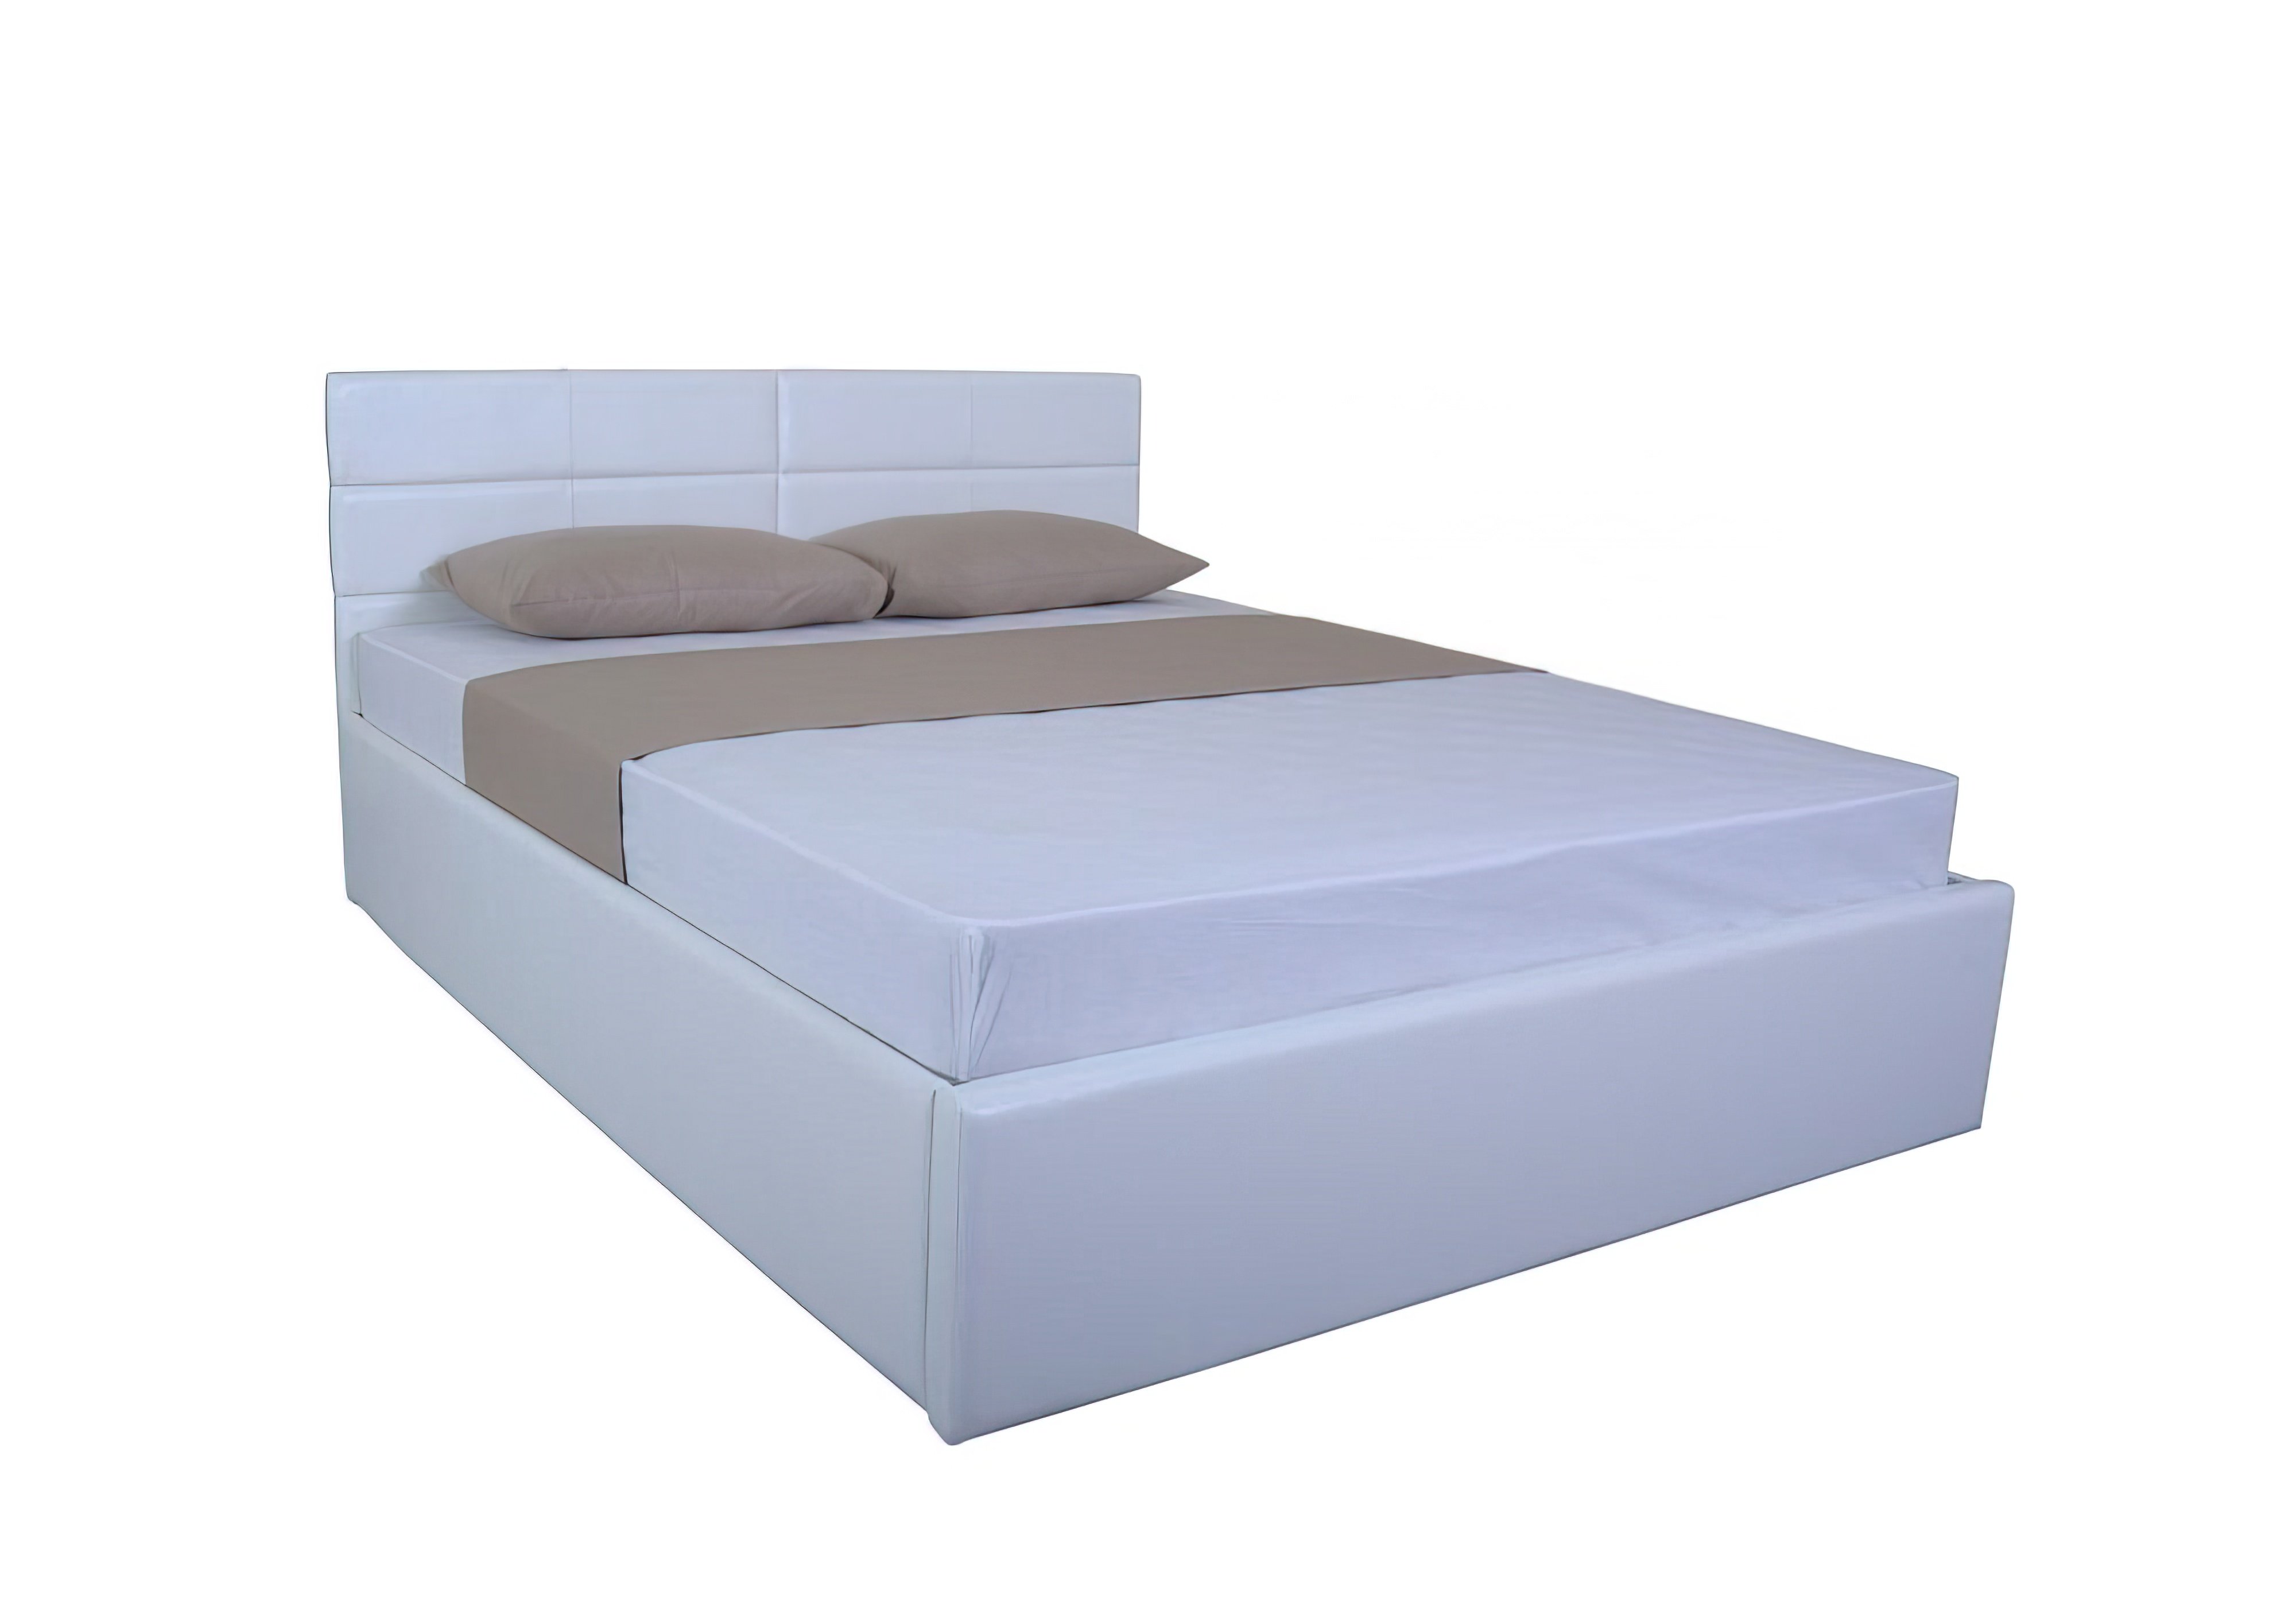  Купить Кровати Кровать с подъемным механизмом "LAGUNA lift" EAGLE